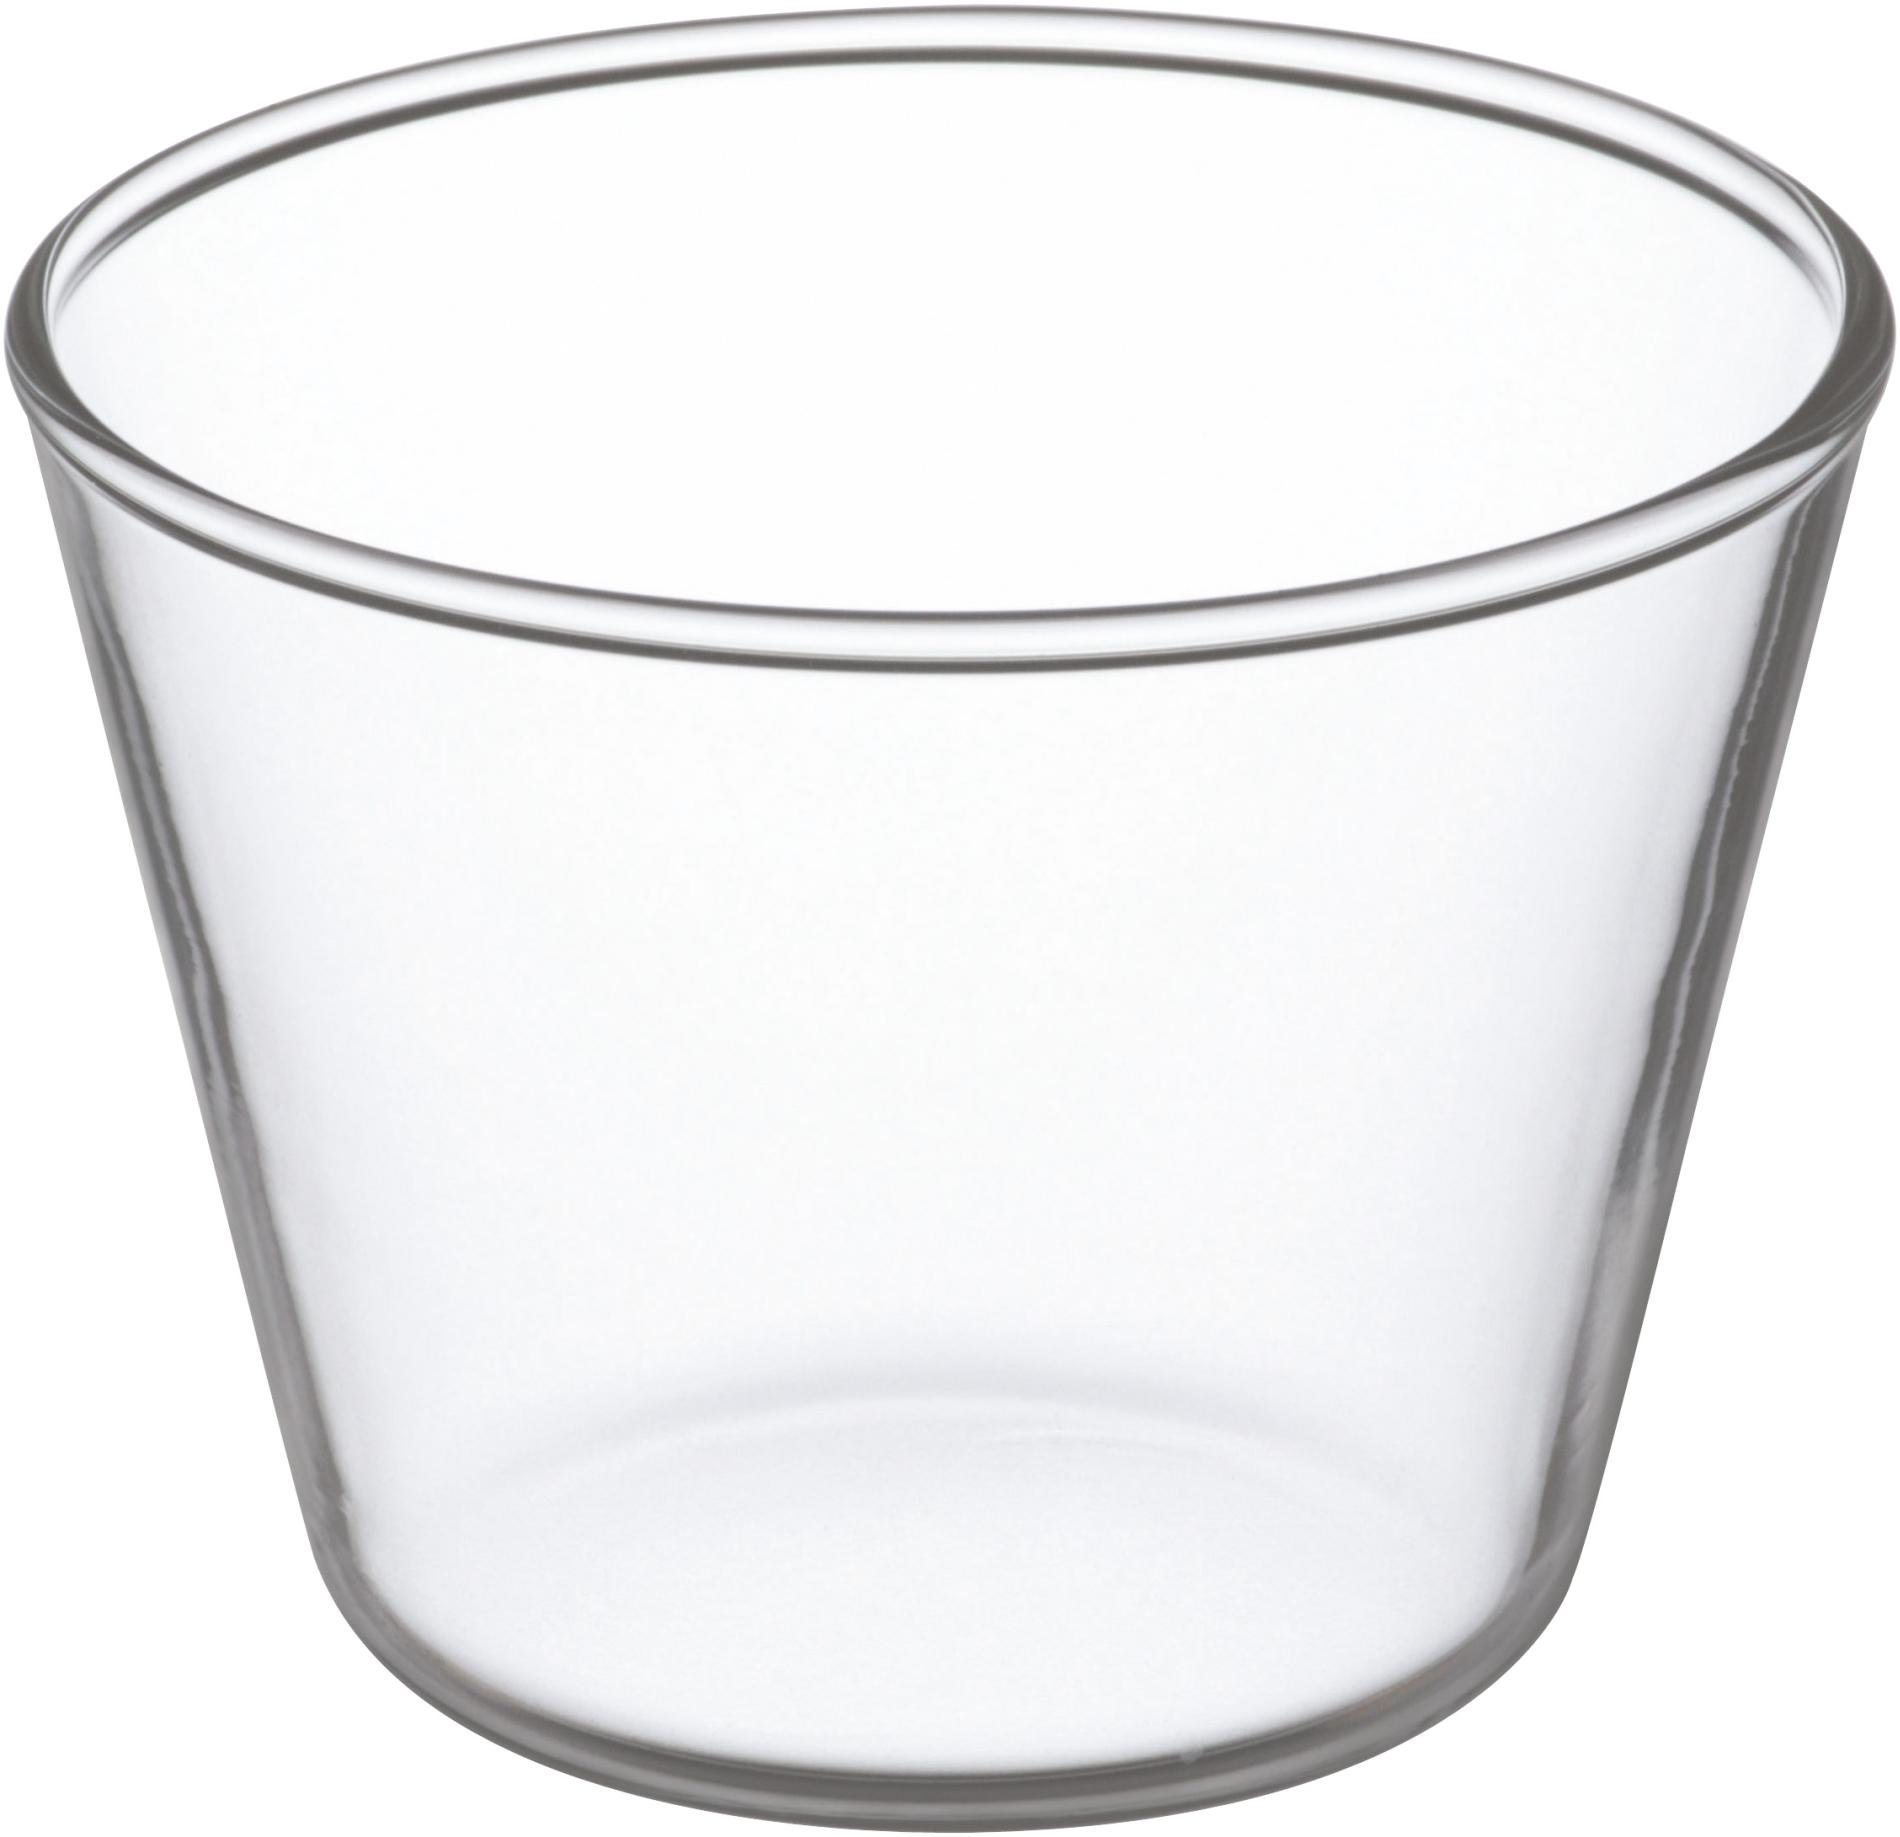 Iwaki ถ้วยพุดดิ้งแก้วโบโรซิลิเกท 240 มิลลิลิตร (8.6 x 6.5 cm) pudding cup จากแบรนด์ชั้นนำจากญี่ปุ่น แก้วใสมากและคราบไม่เกาะ ราคาถูกที่สุดในนี้